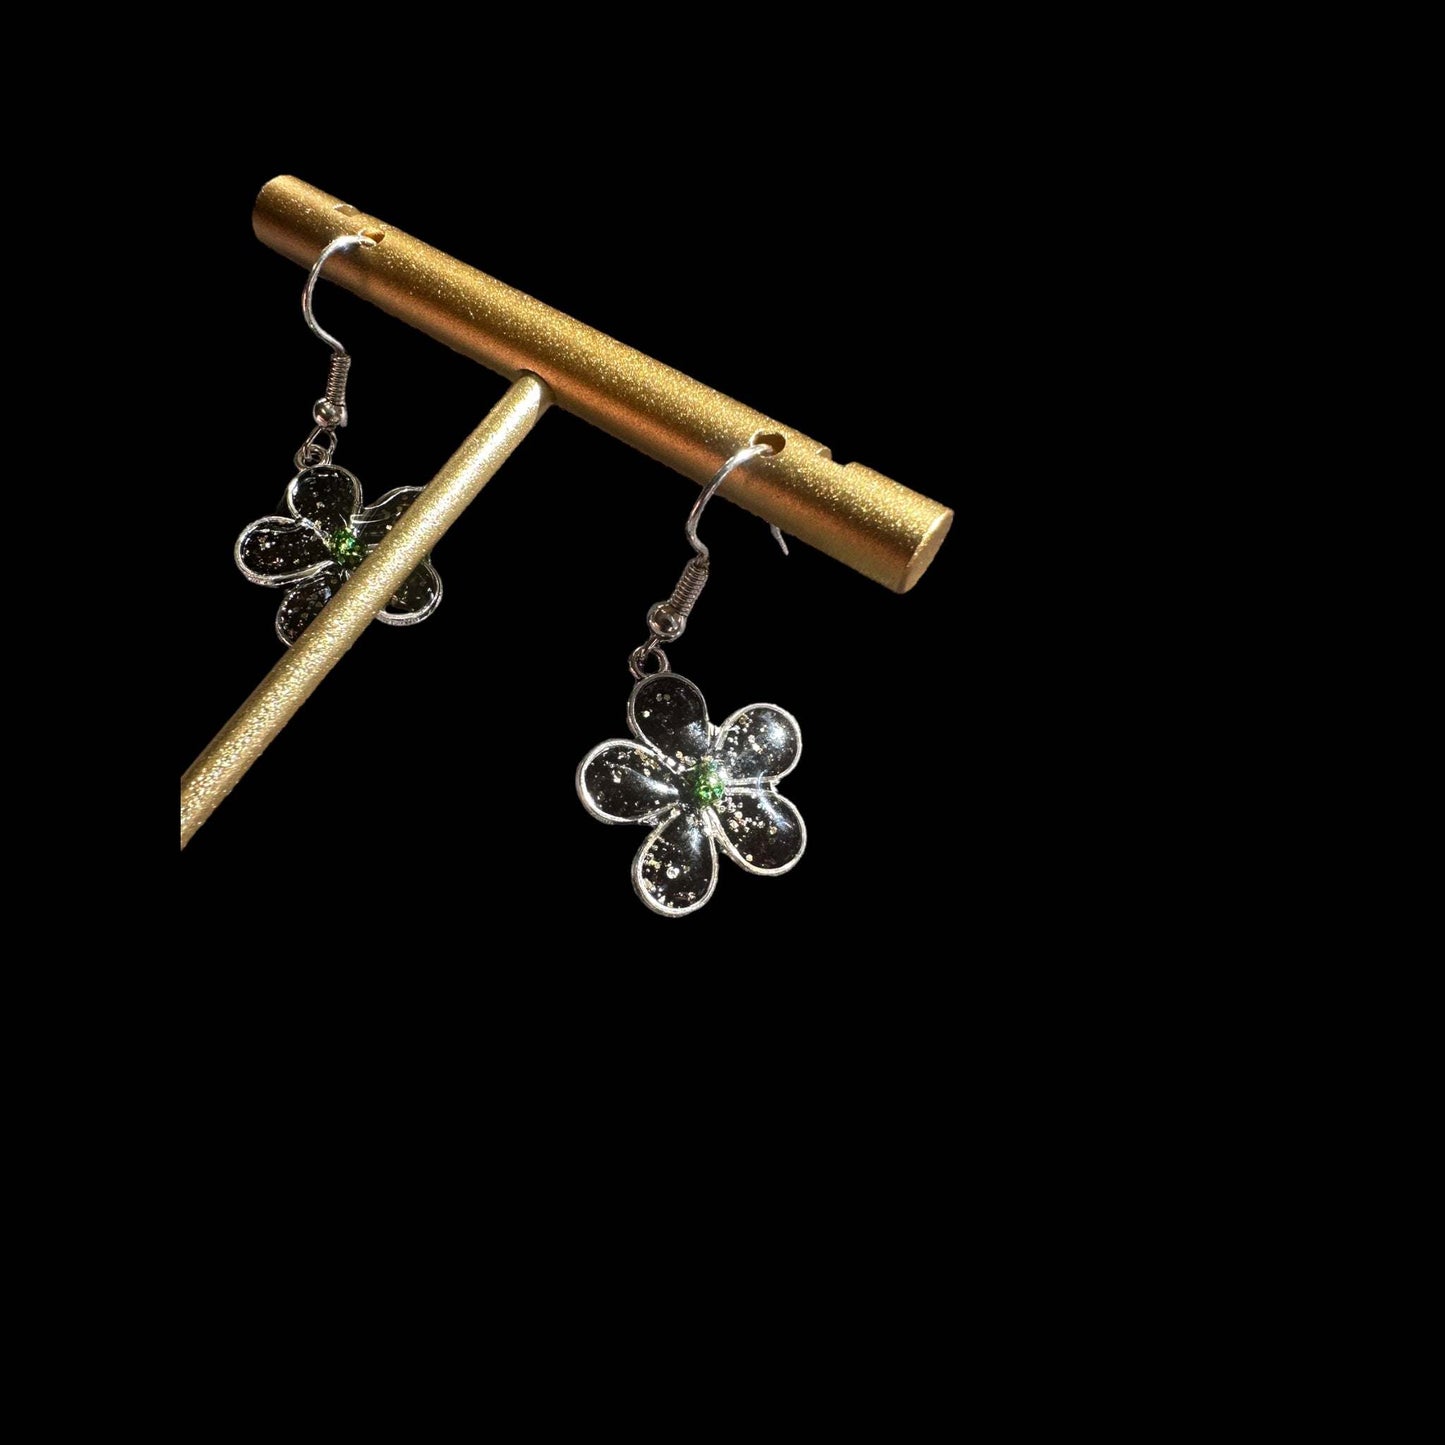 Earring Handmade Resin Flower Earring Set - Black and Silver Glitter